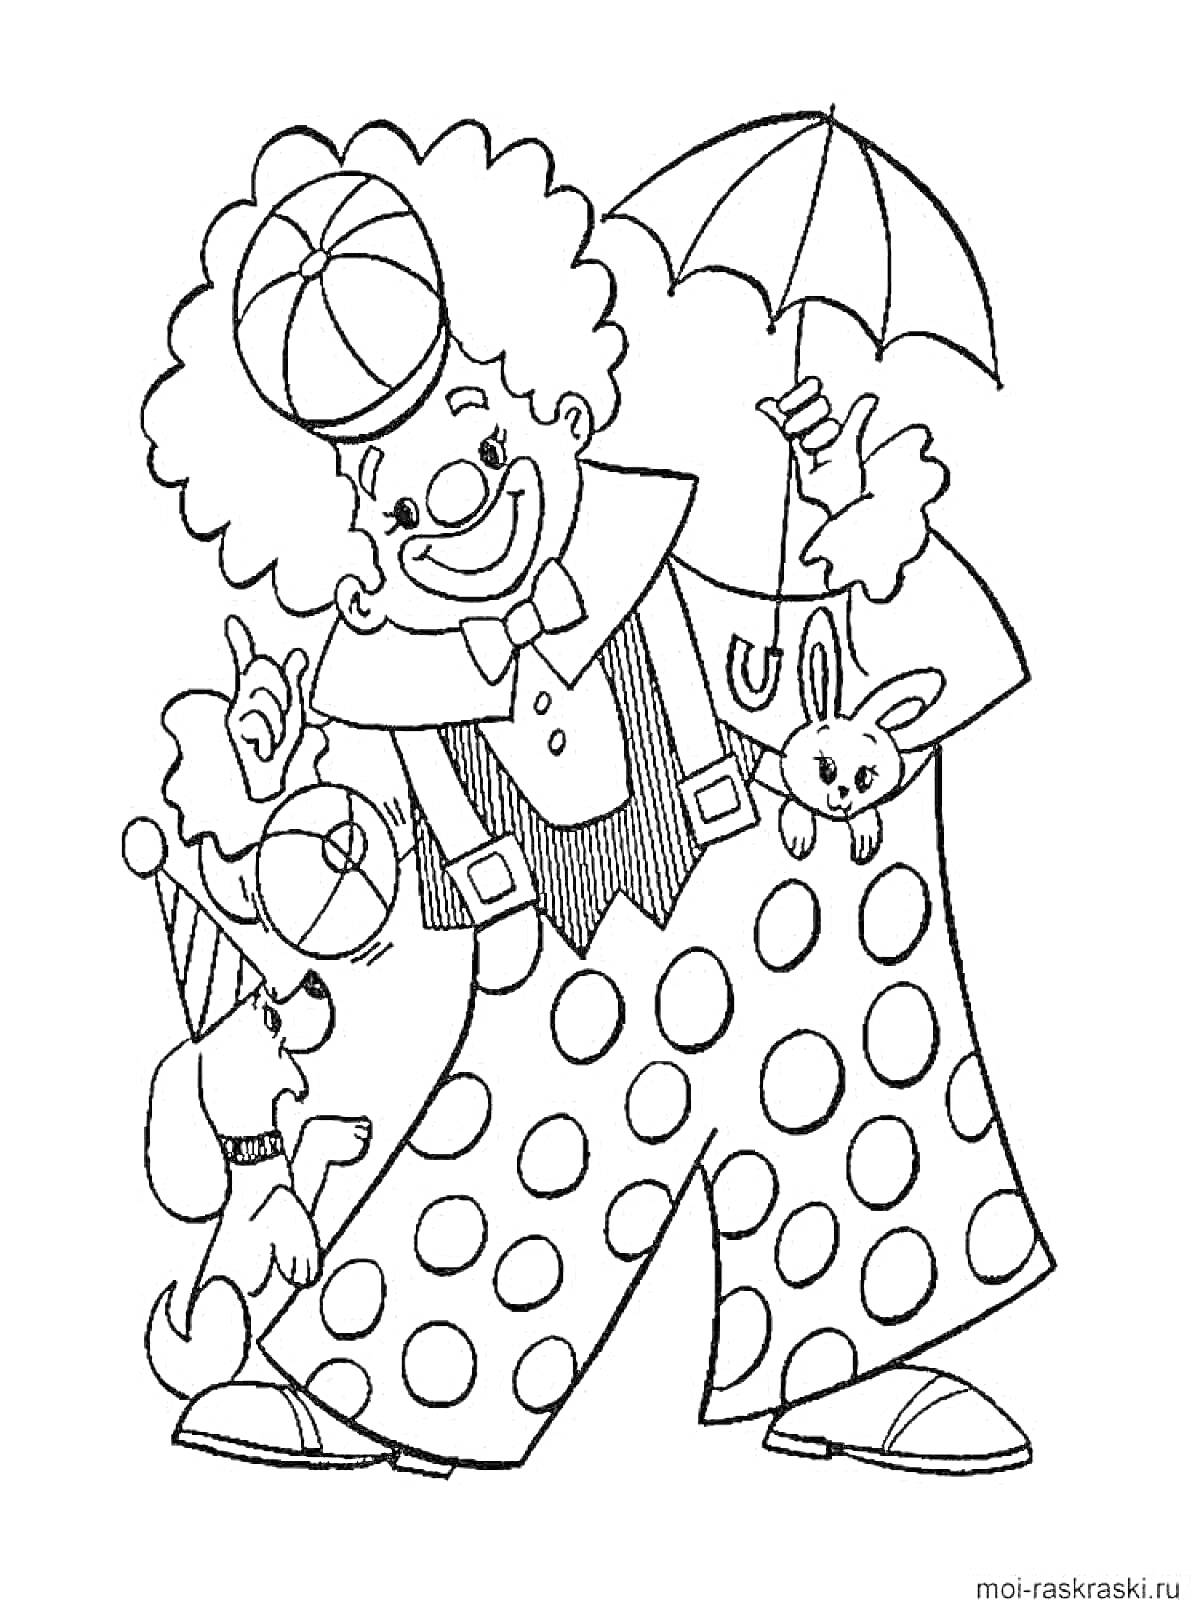 Раскраска Клоун с зонтиком, держит игрушечного зайца, рядом собака в колпаке